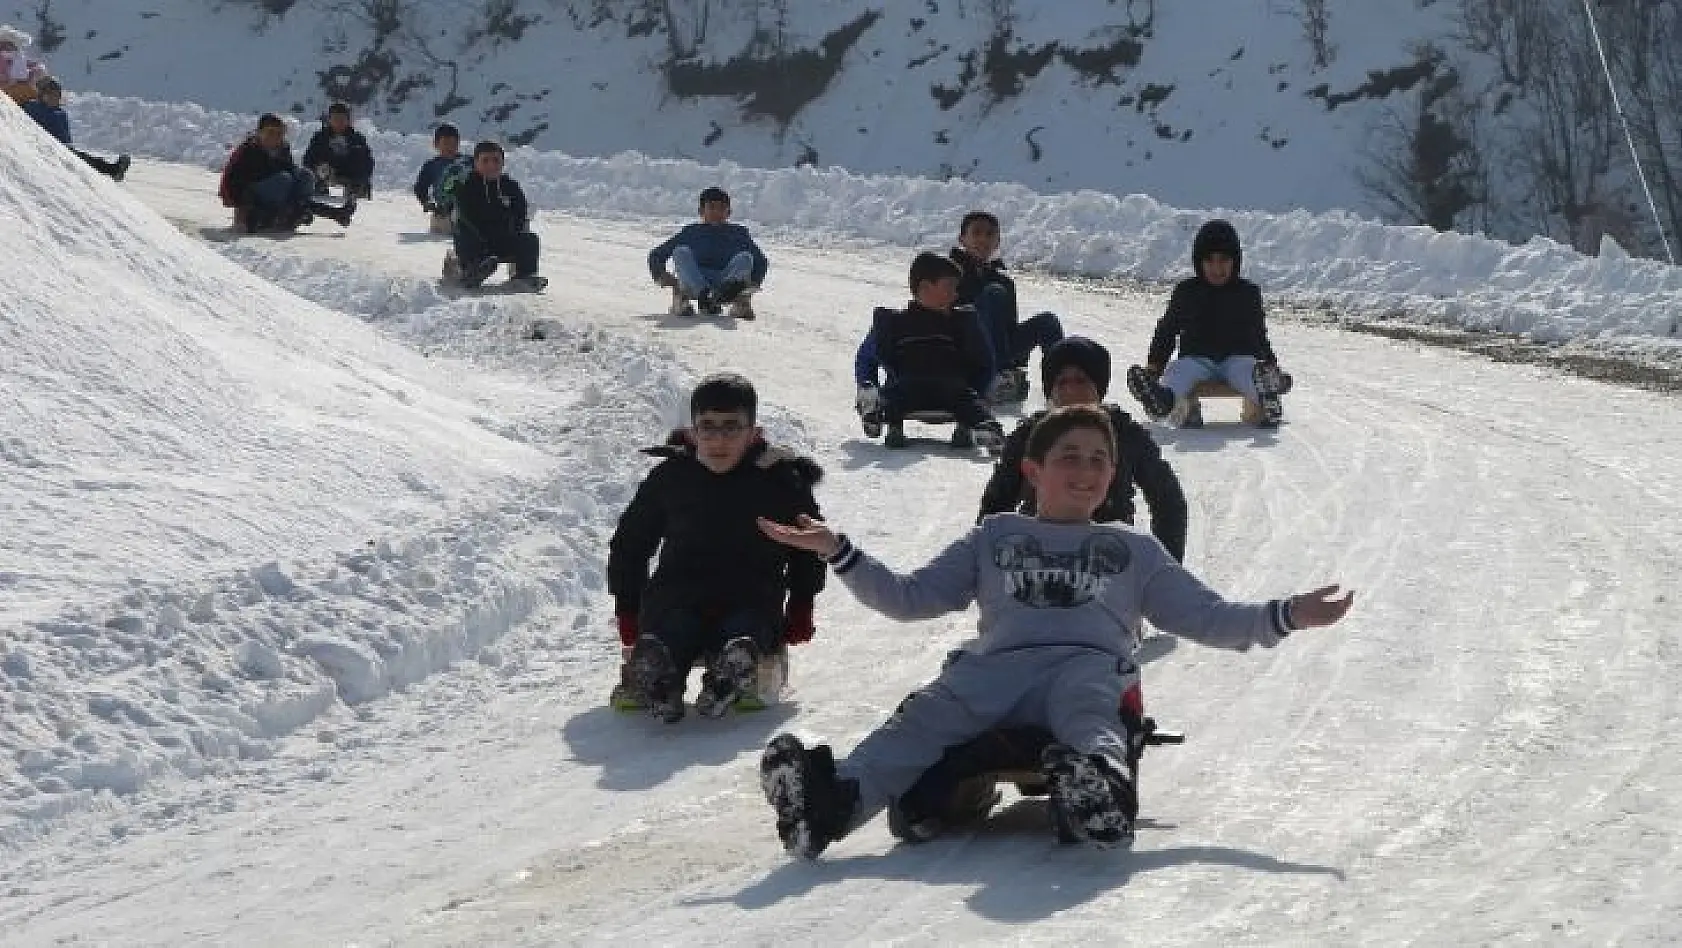 Trafiğe kapalı yol kayak pisti oldu, çocuklar babalarıyla doyasıya eğlendi